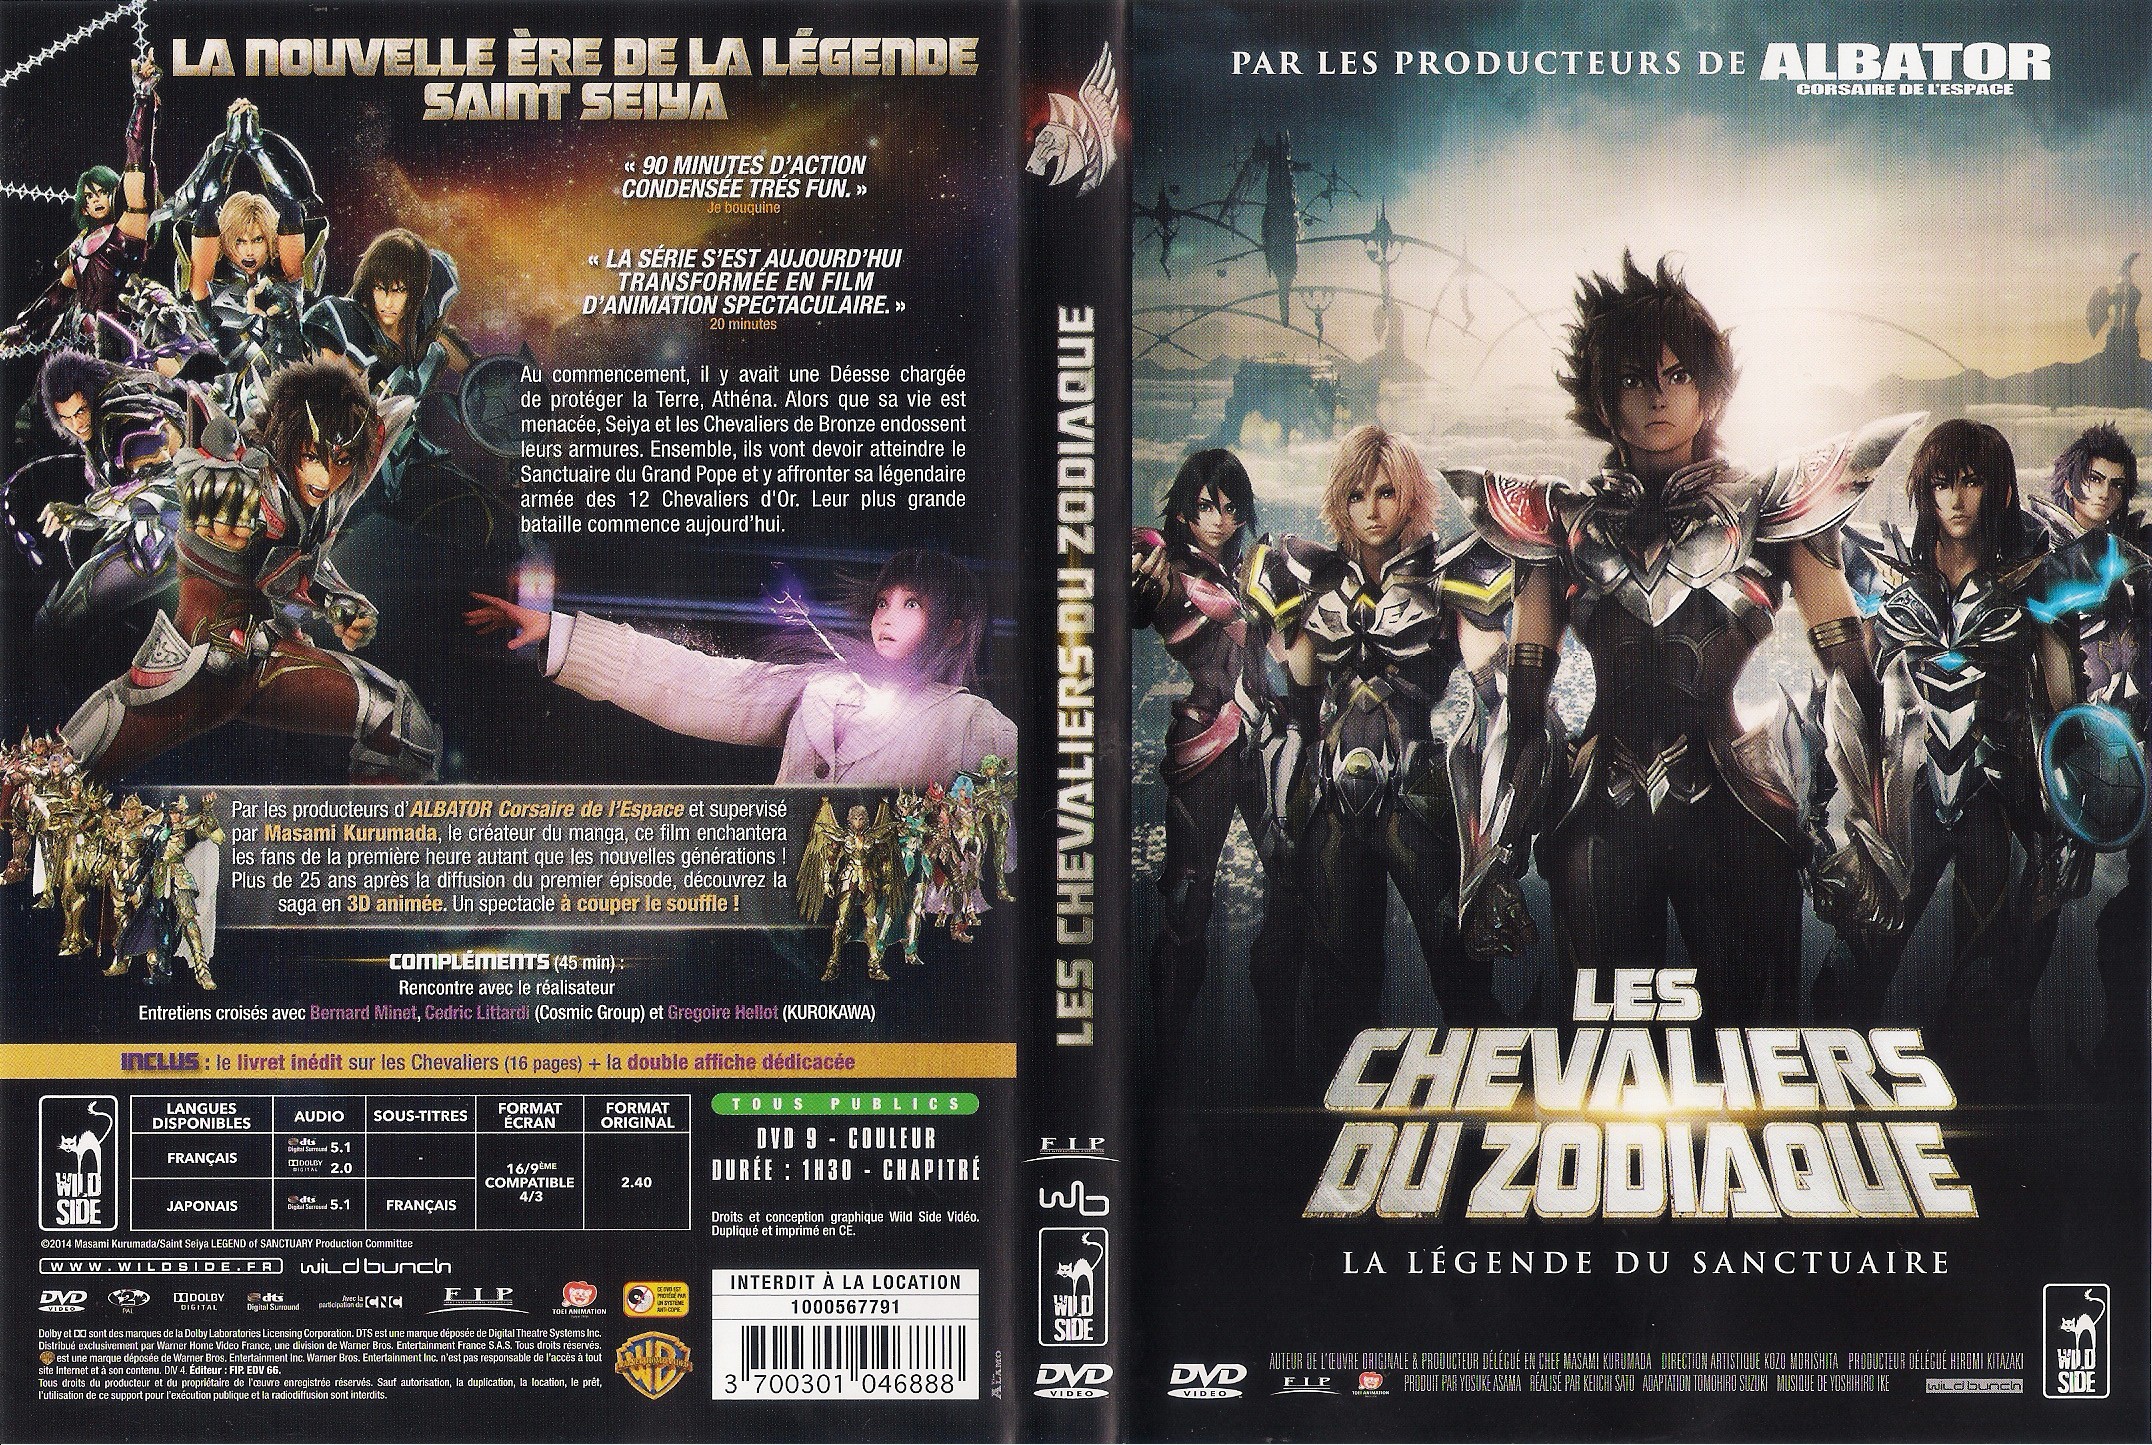 Jaquette DVD Les Chevaliers du Zodiaque (2014) v2